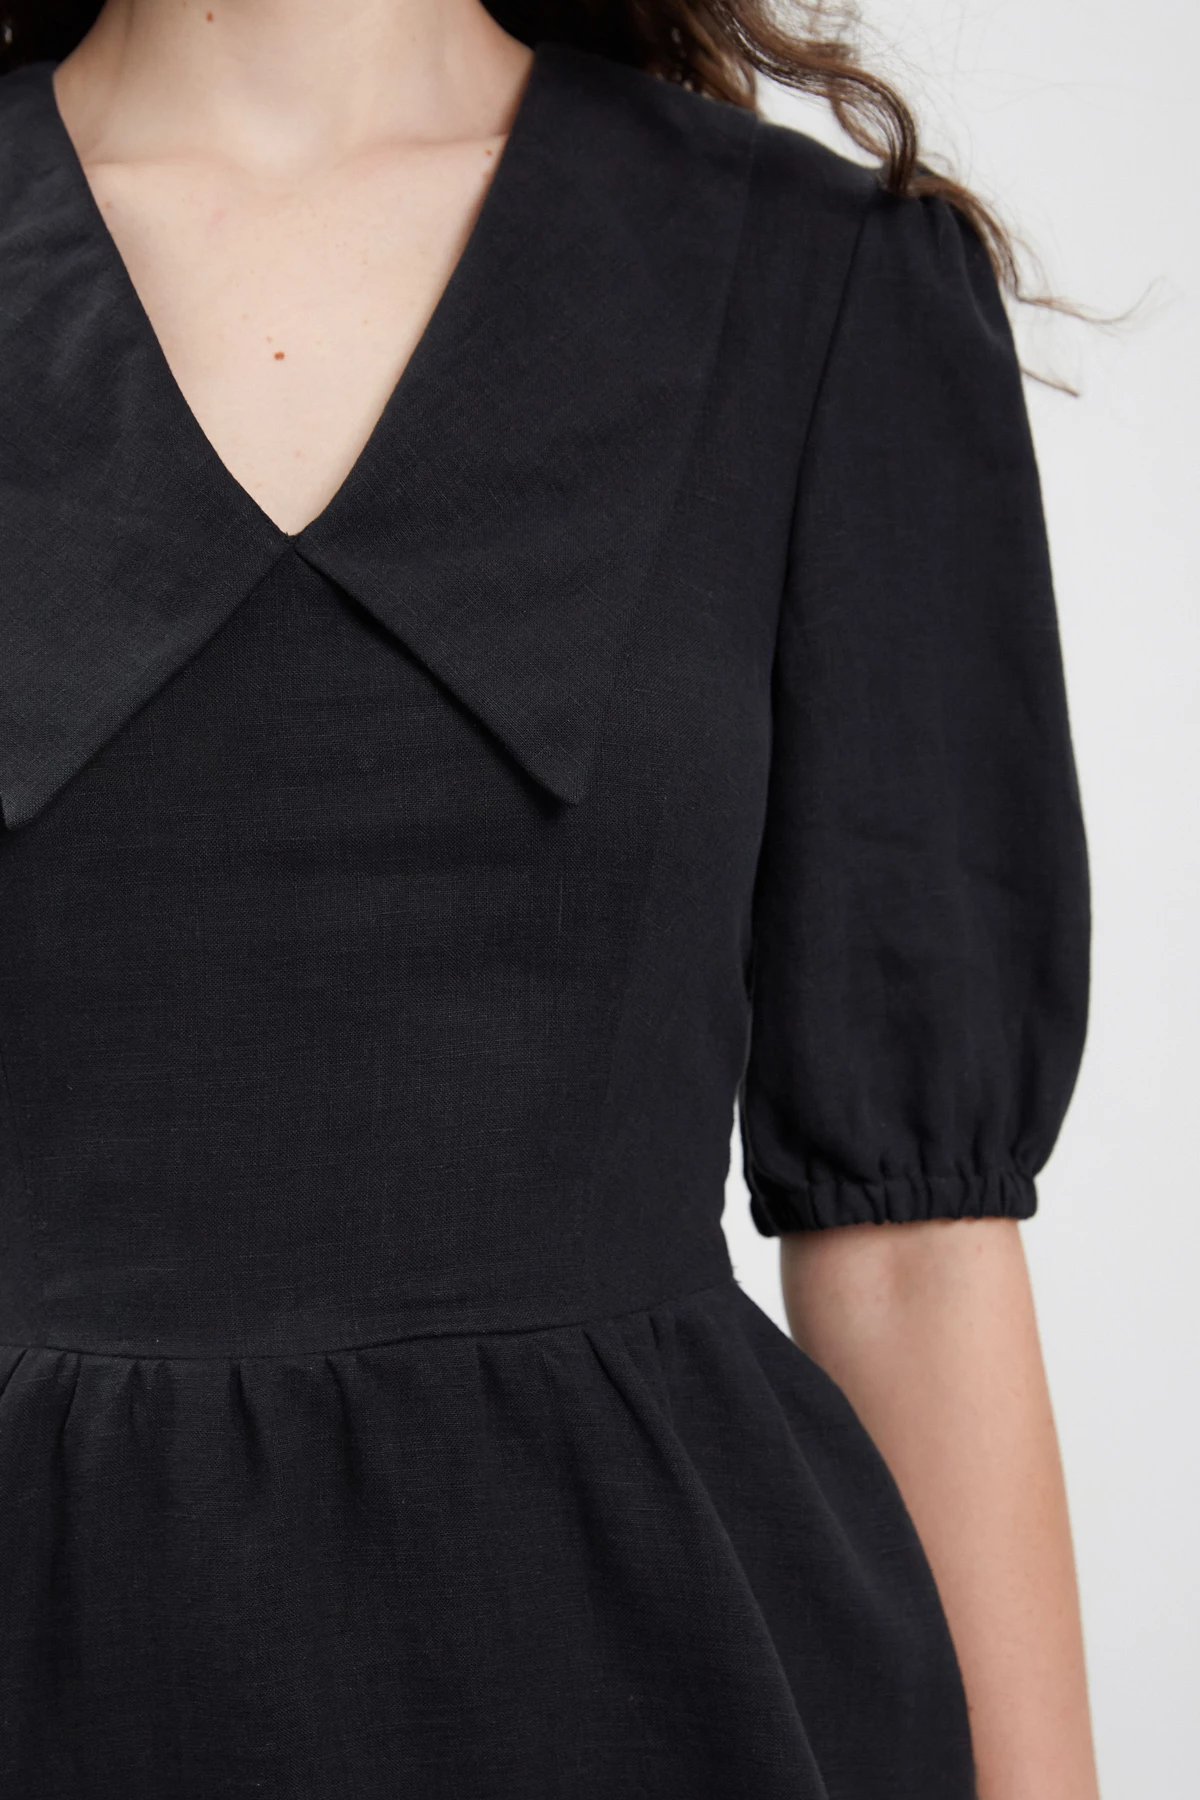 Чорна коротка сукня з коміром зі 100% льону, фото 6